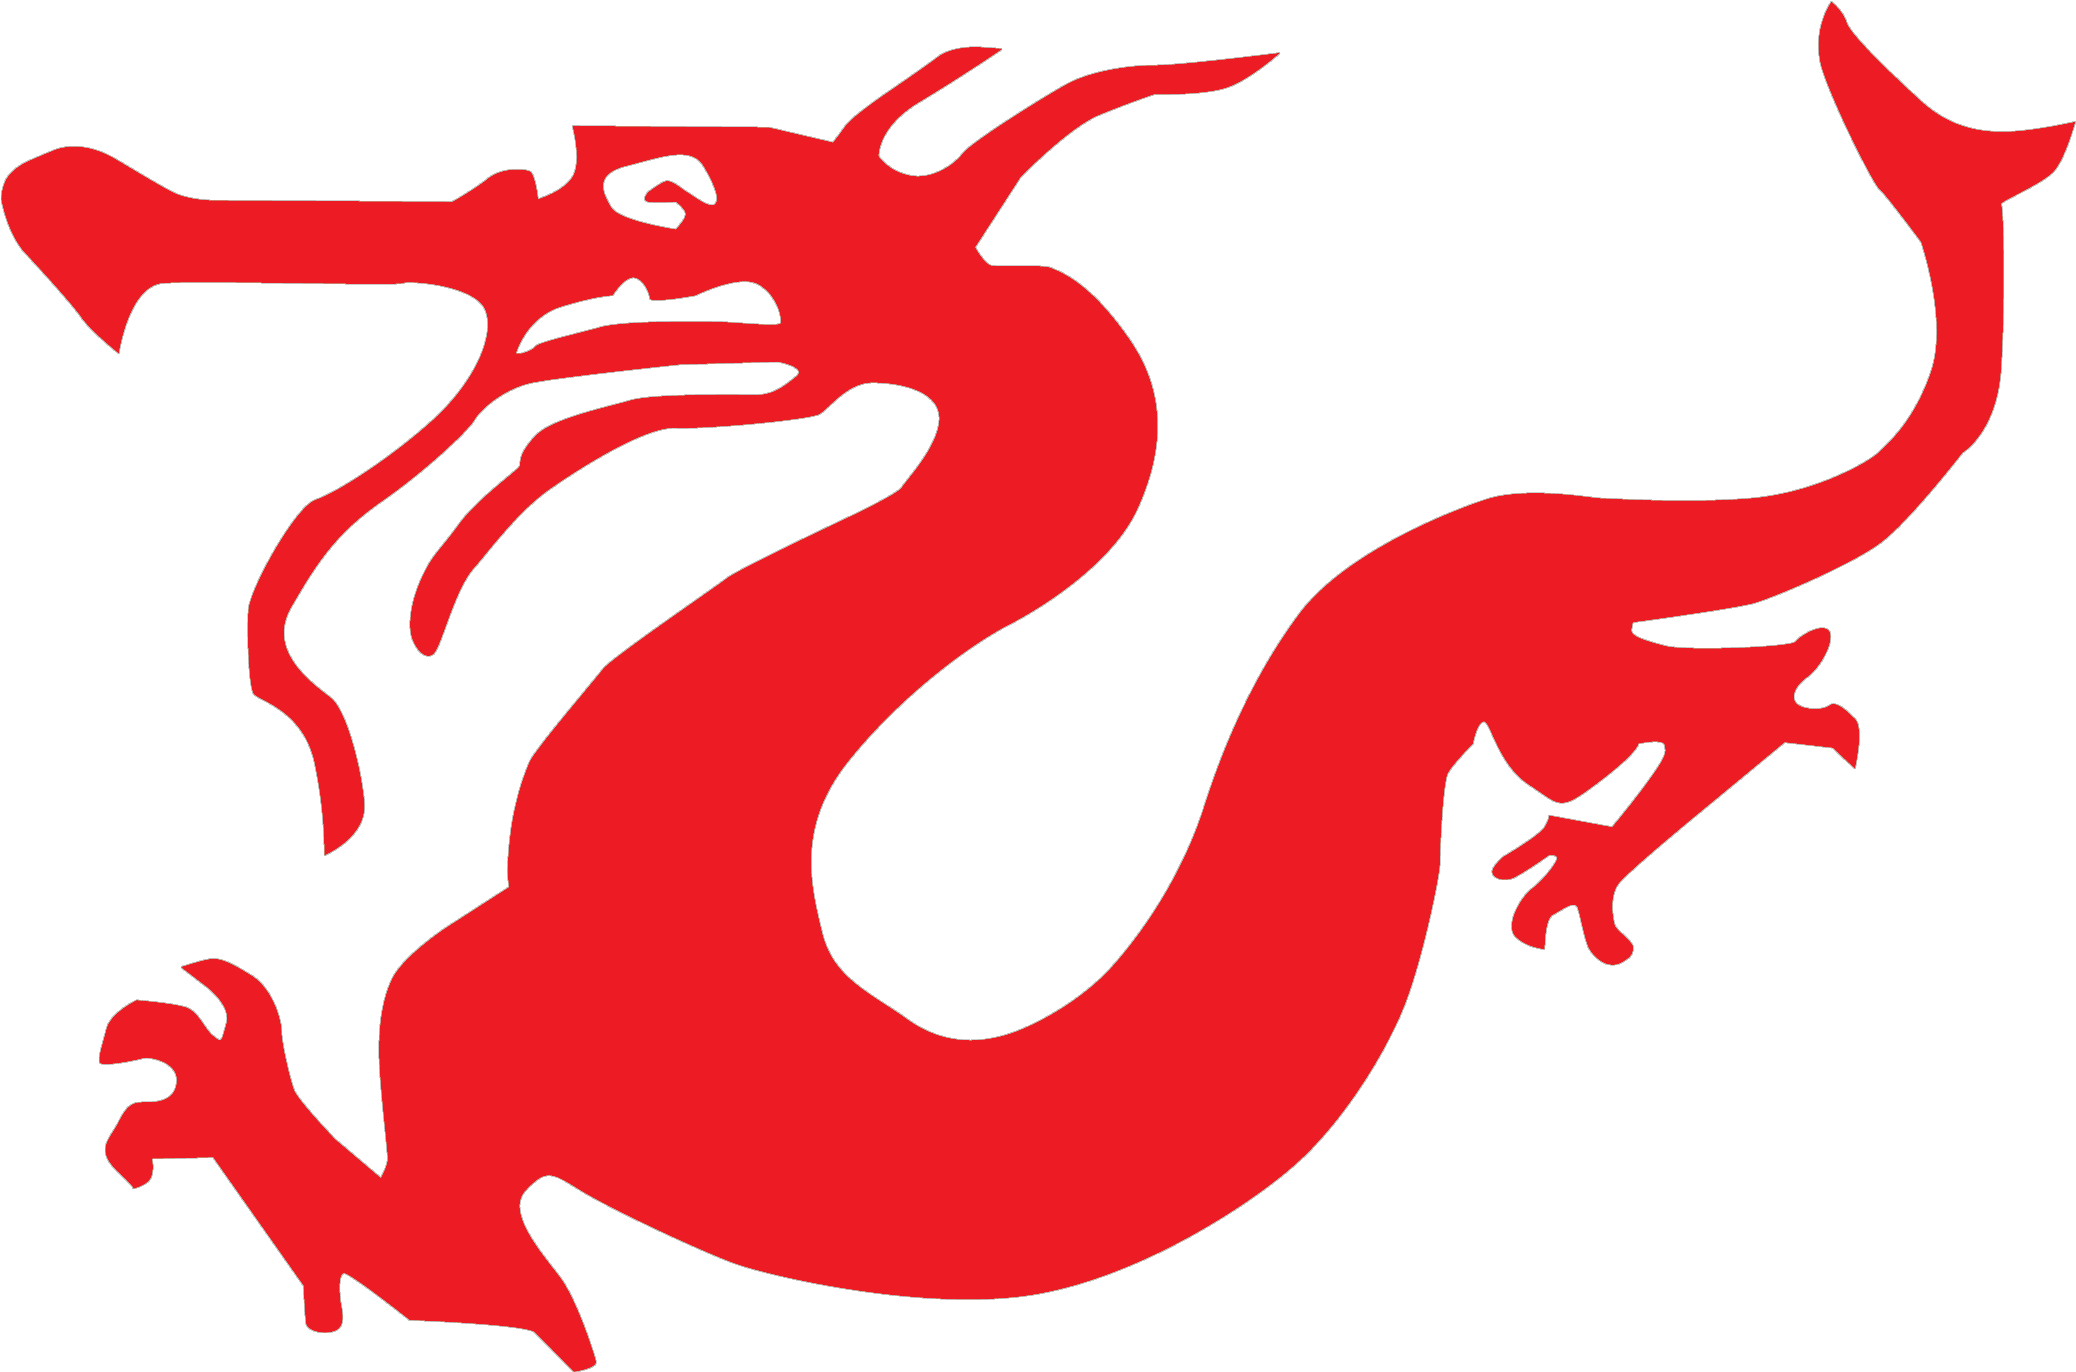 Rit Asian Deaf Club Logo - Illustration (2443x1858)